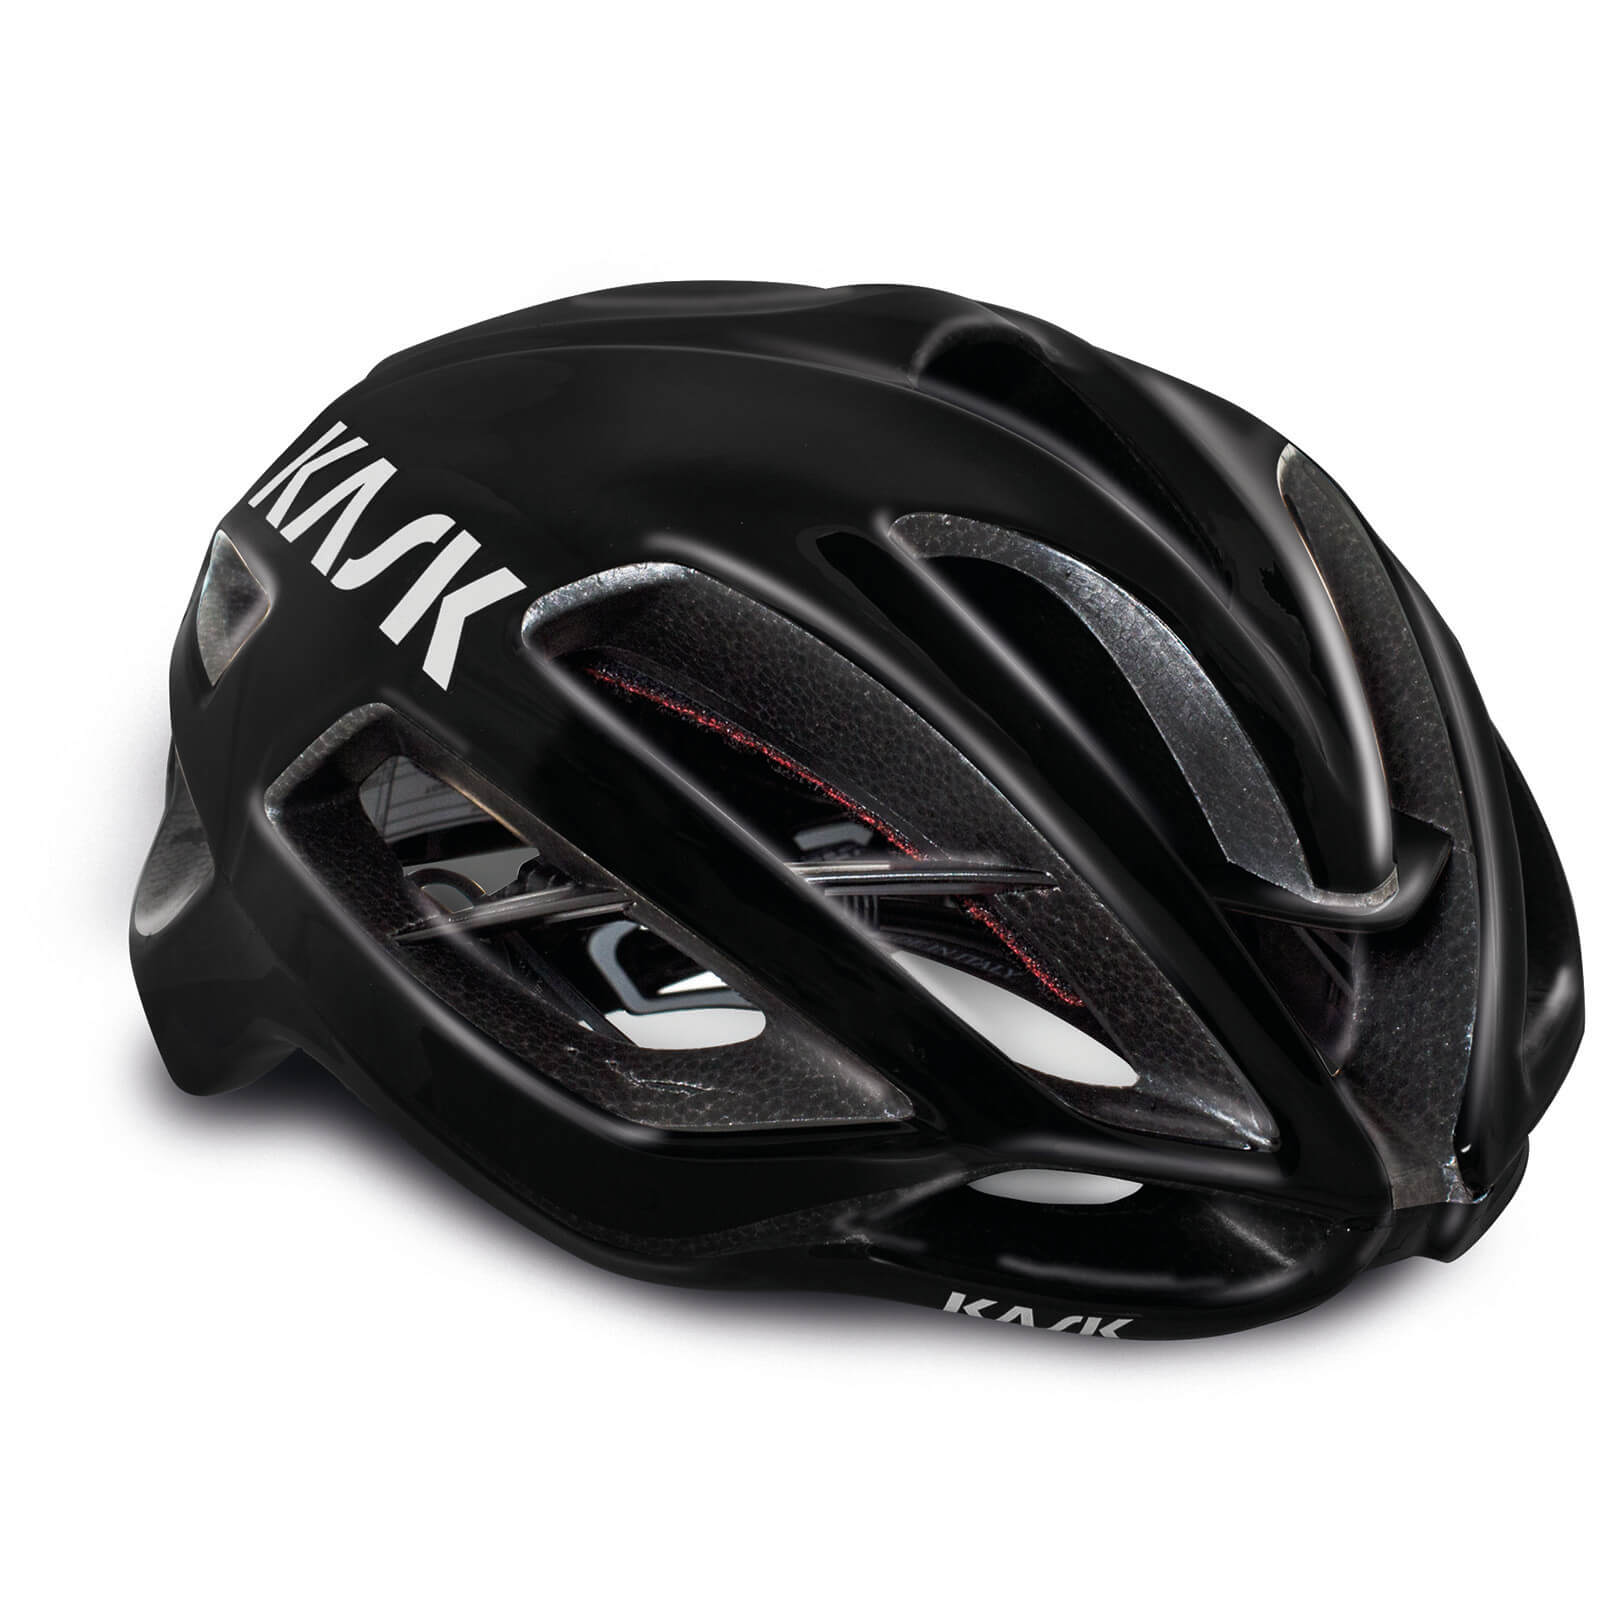 Image of Kask Protone WG11 Road Helmet - M - Black